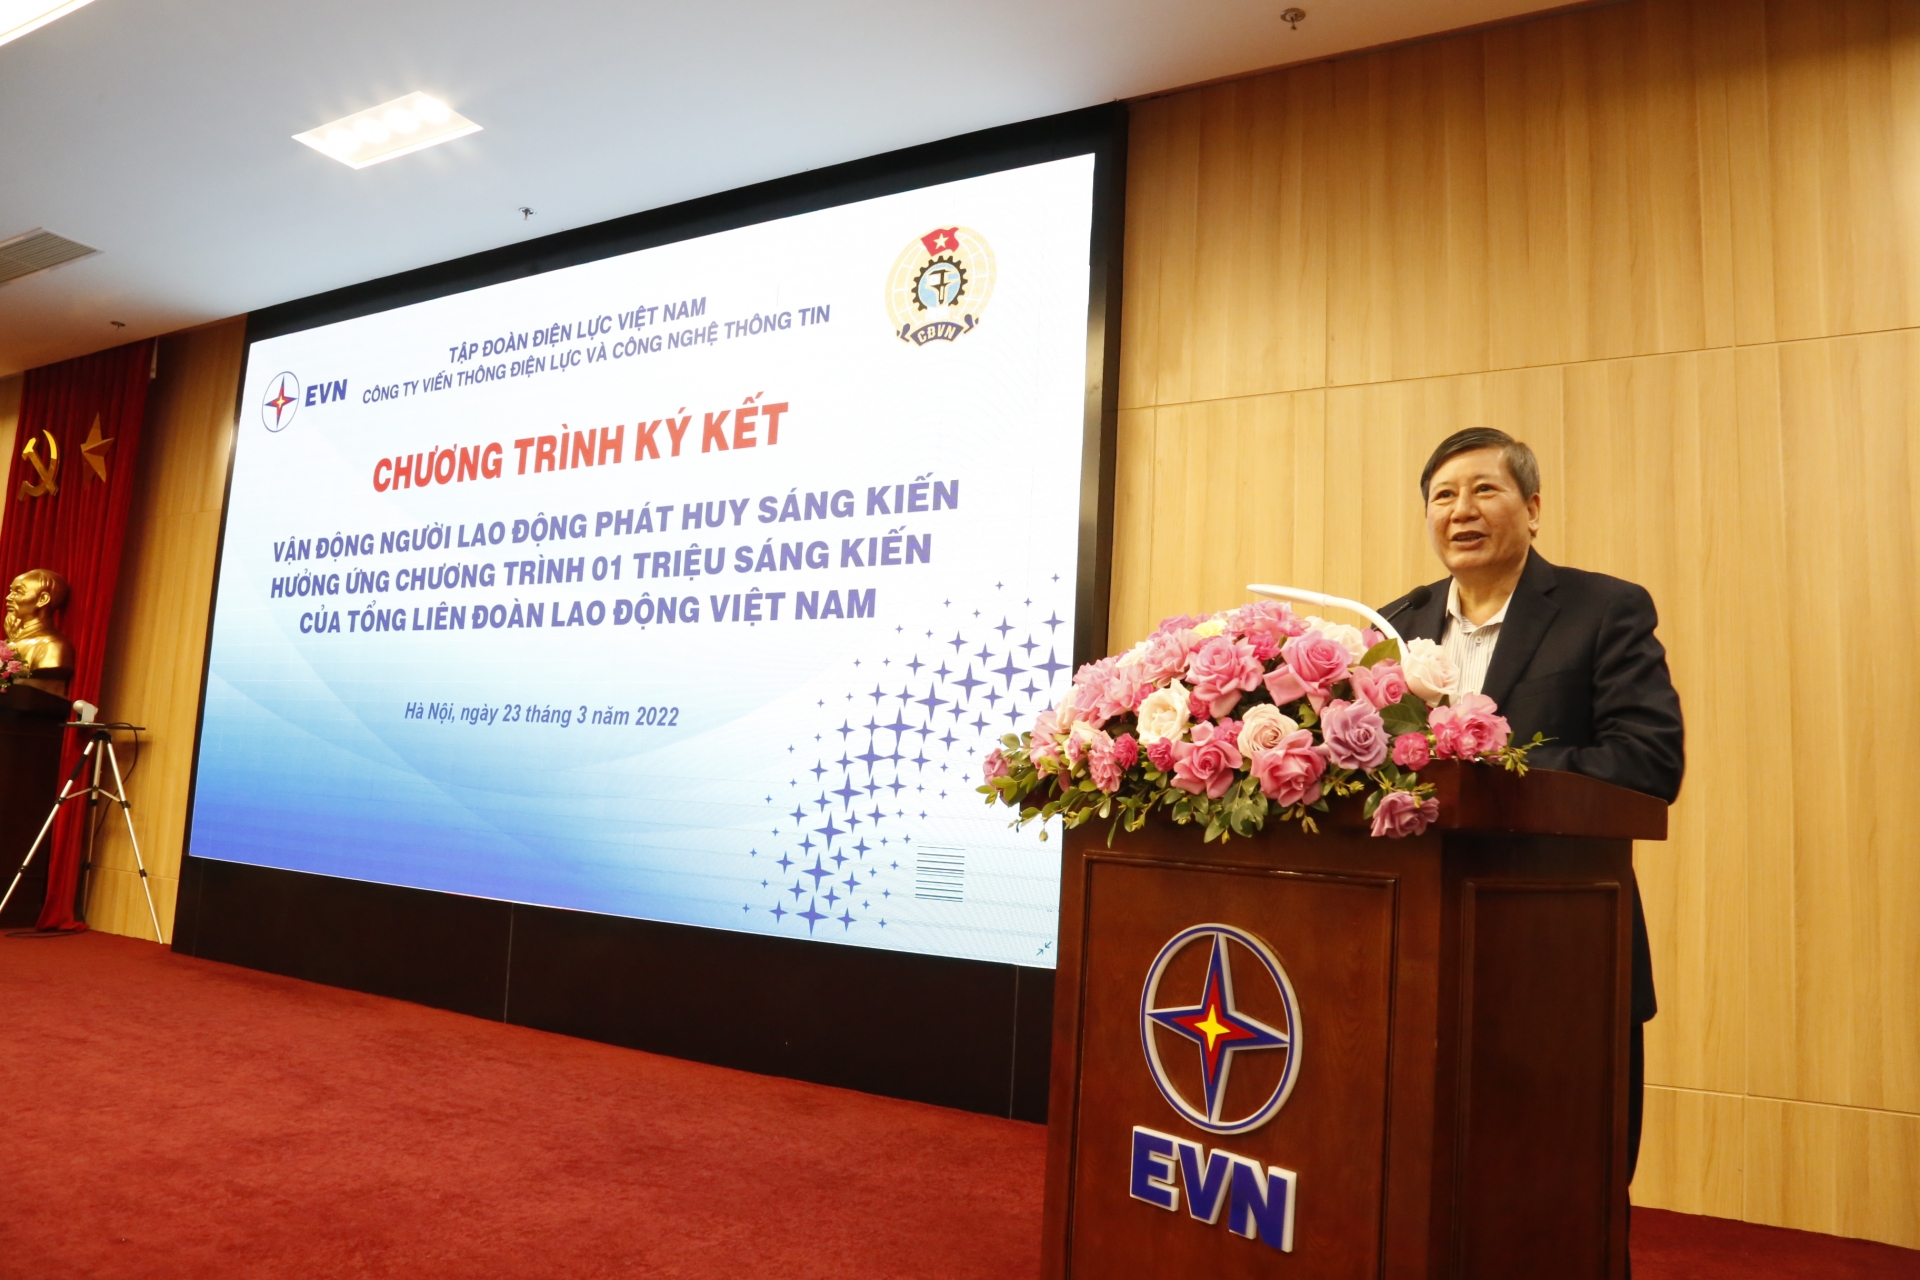 Thực hiện 10.000 sáng kiến trong Tập đoàn Điện lực Việt Nam (giai đoạn 2022 - 2023)